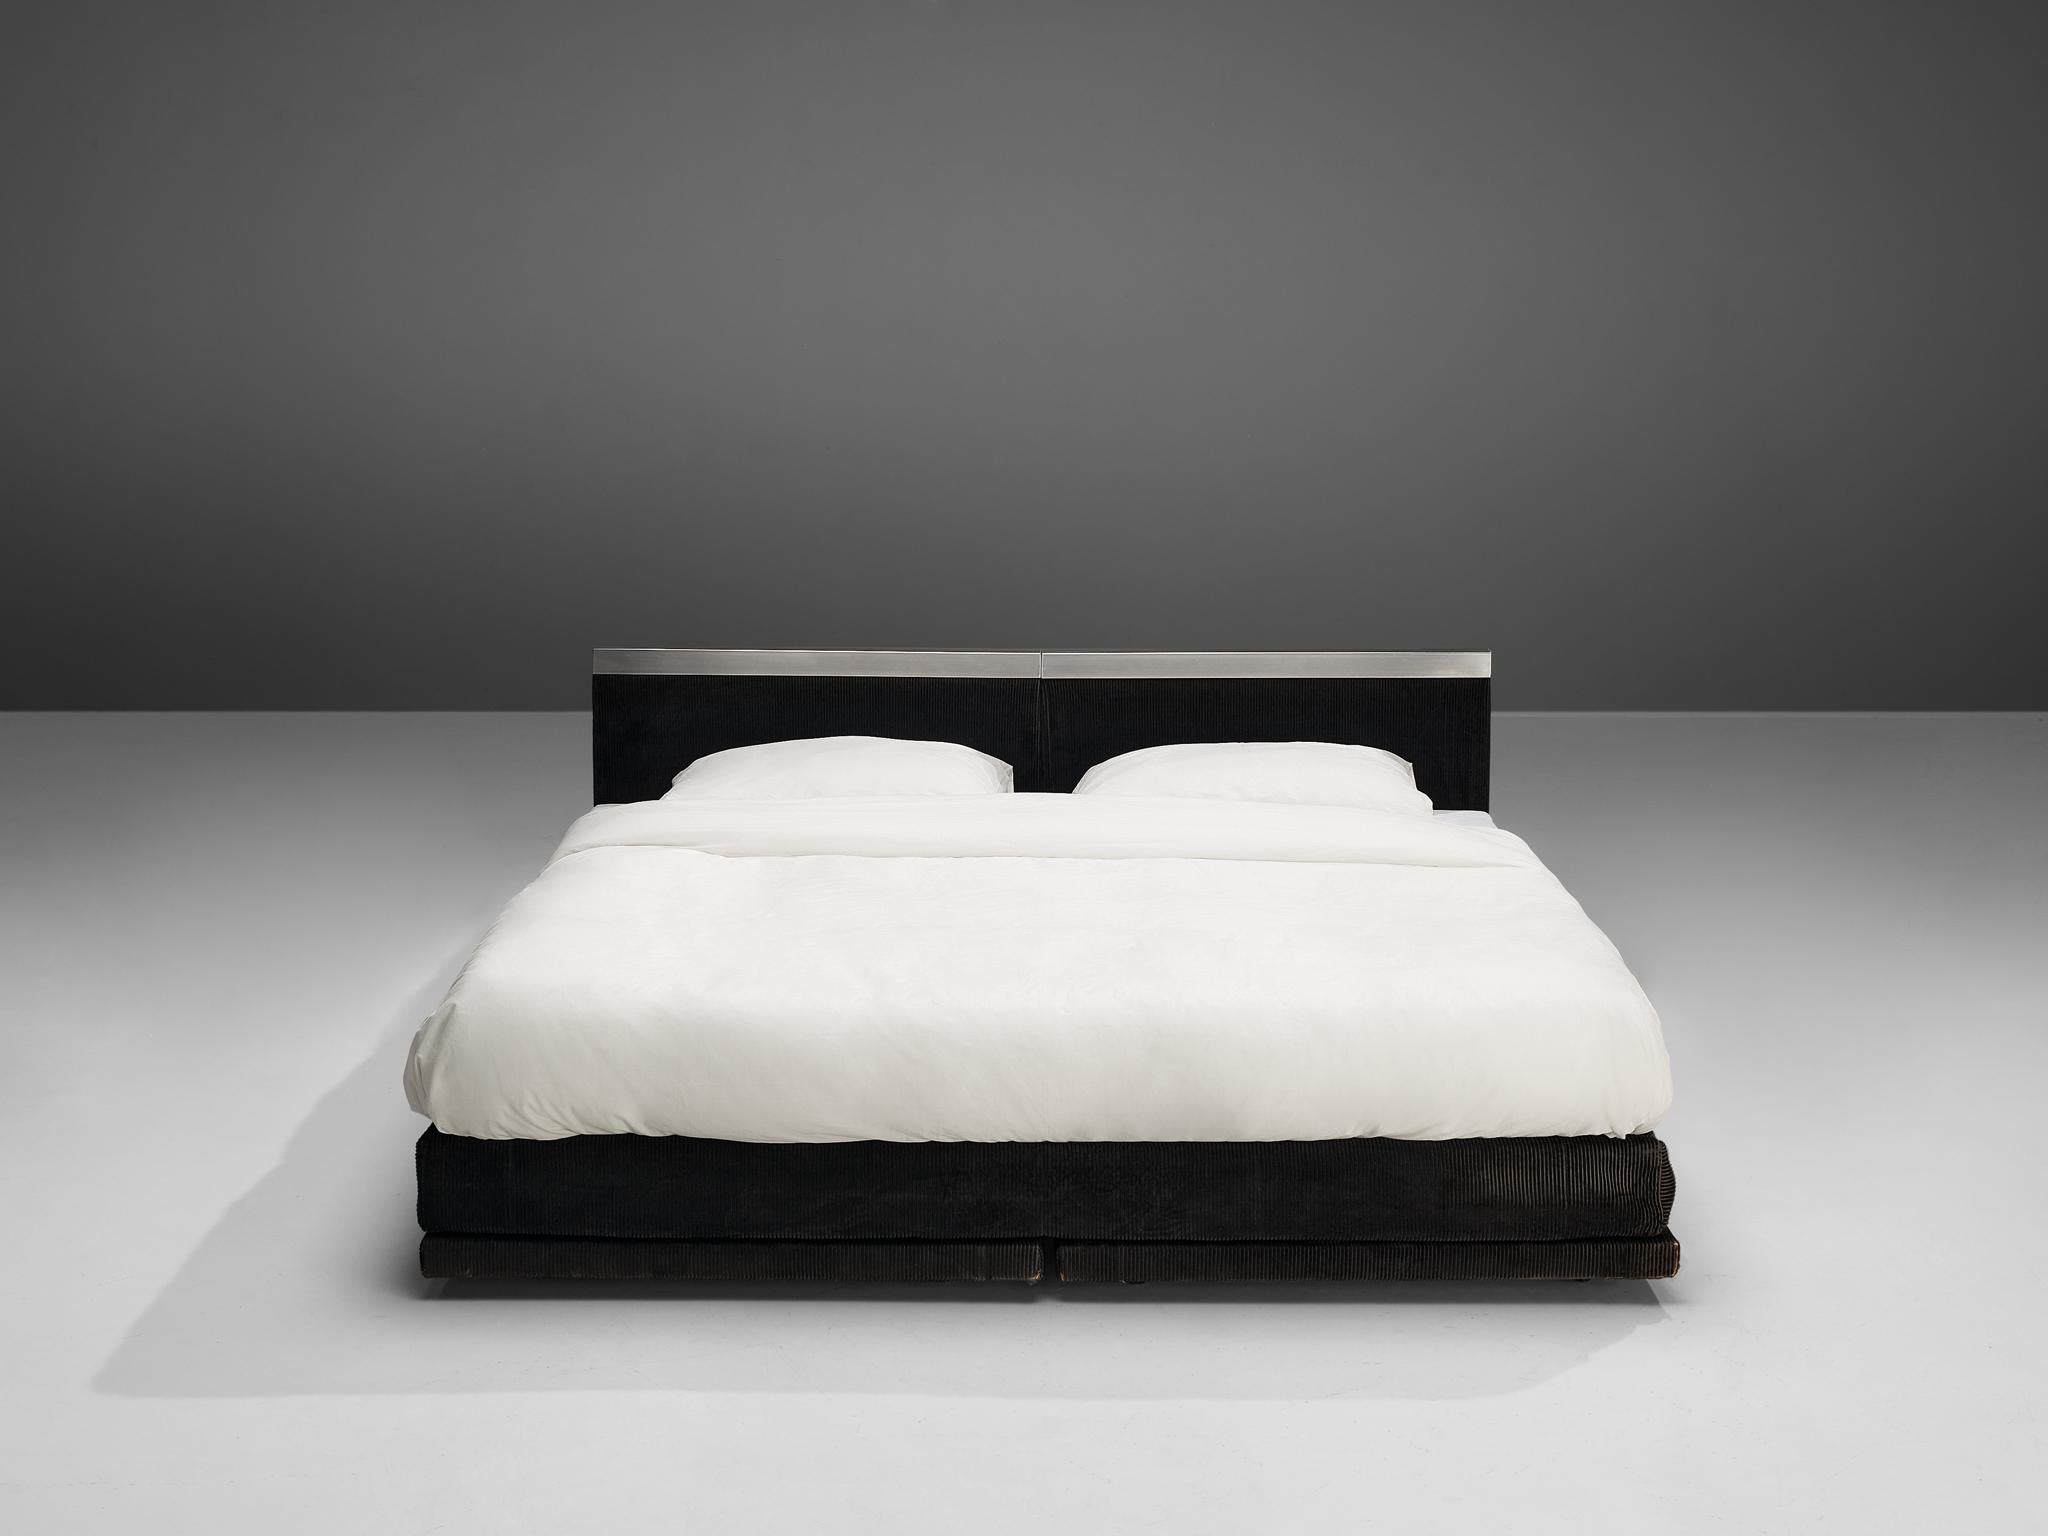 Italian Custom-Made Bed by Bazzani with Aluminium Details